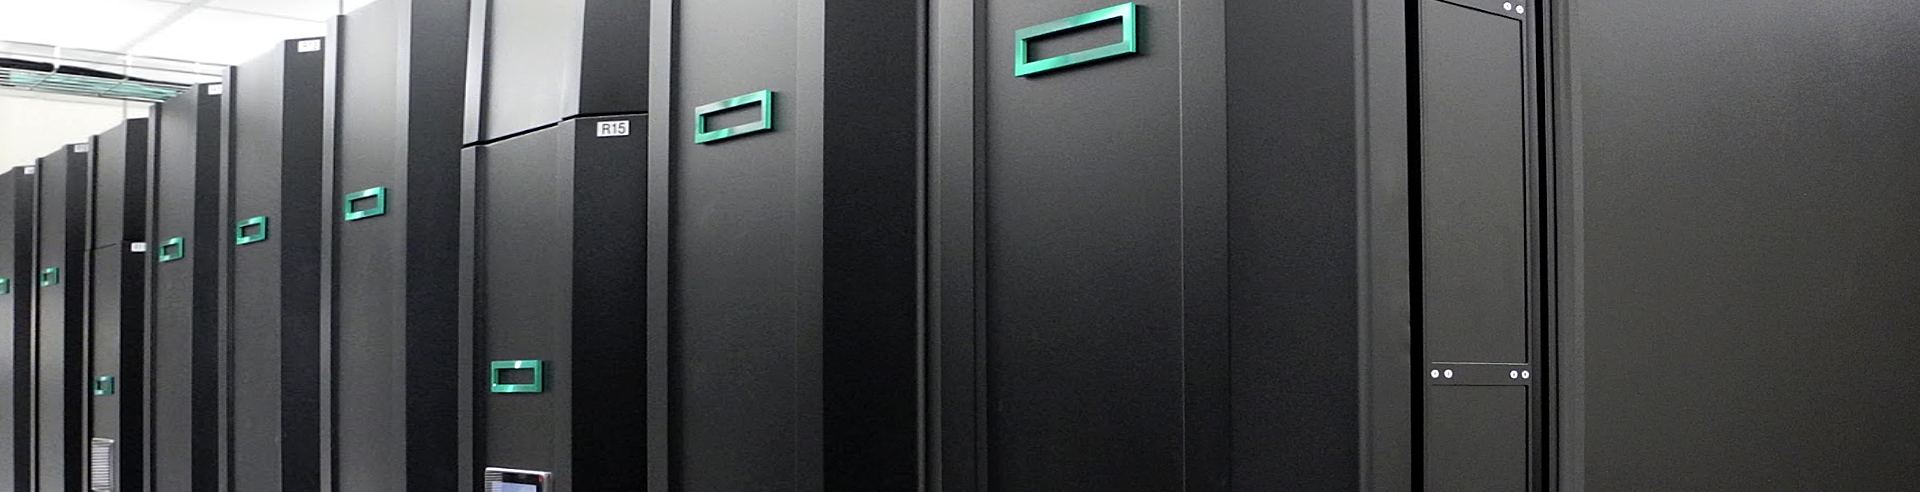 Supercomputer stack at MSI